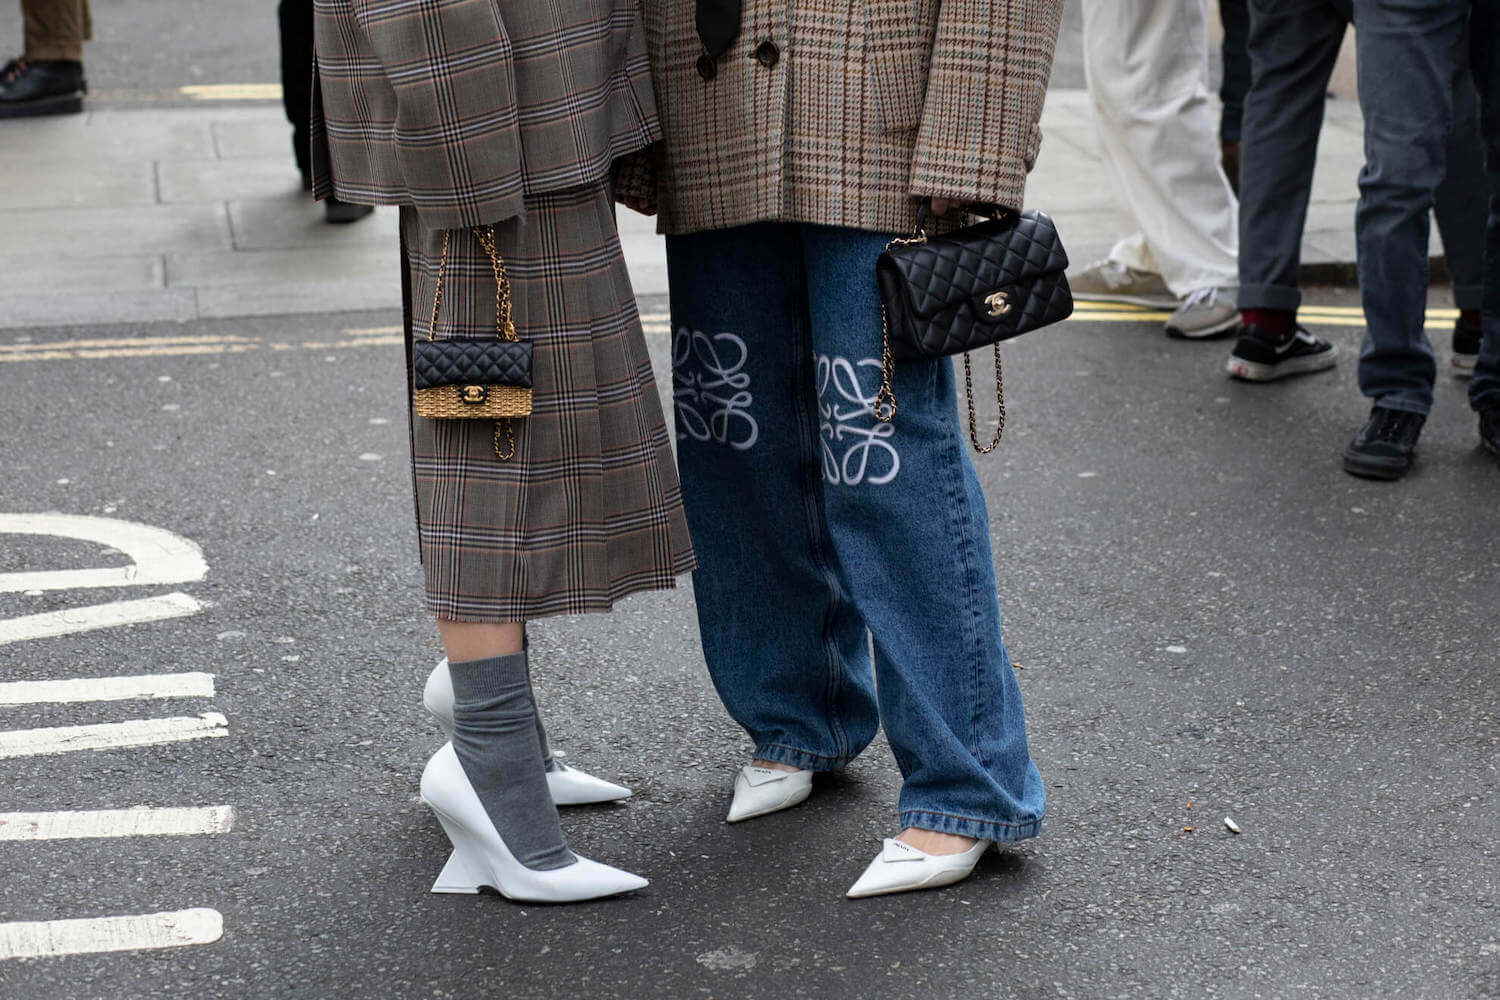 Two women at London Fashion Week